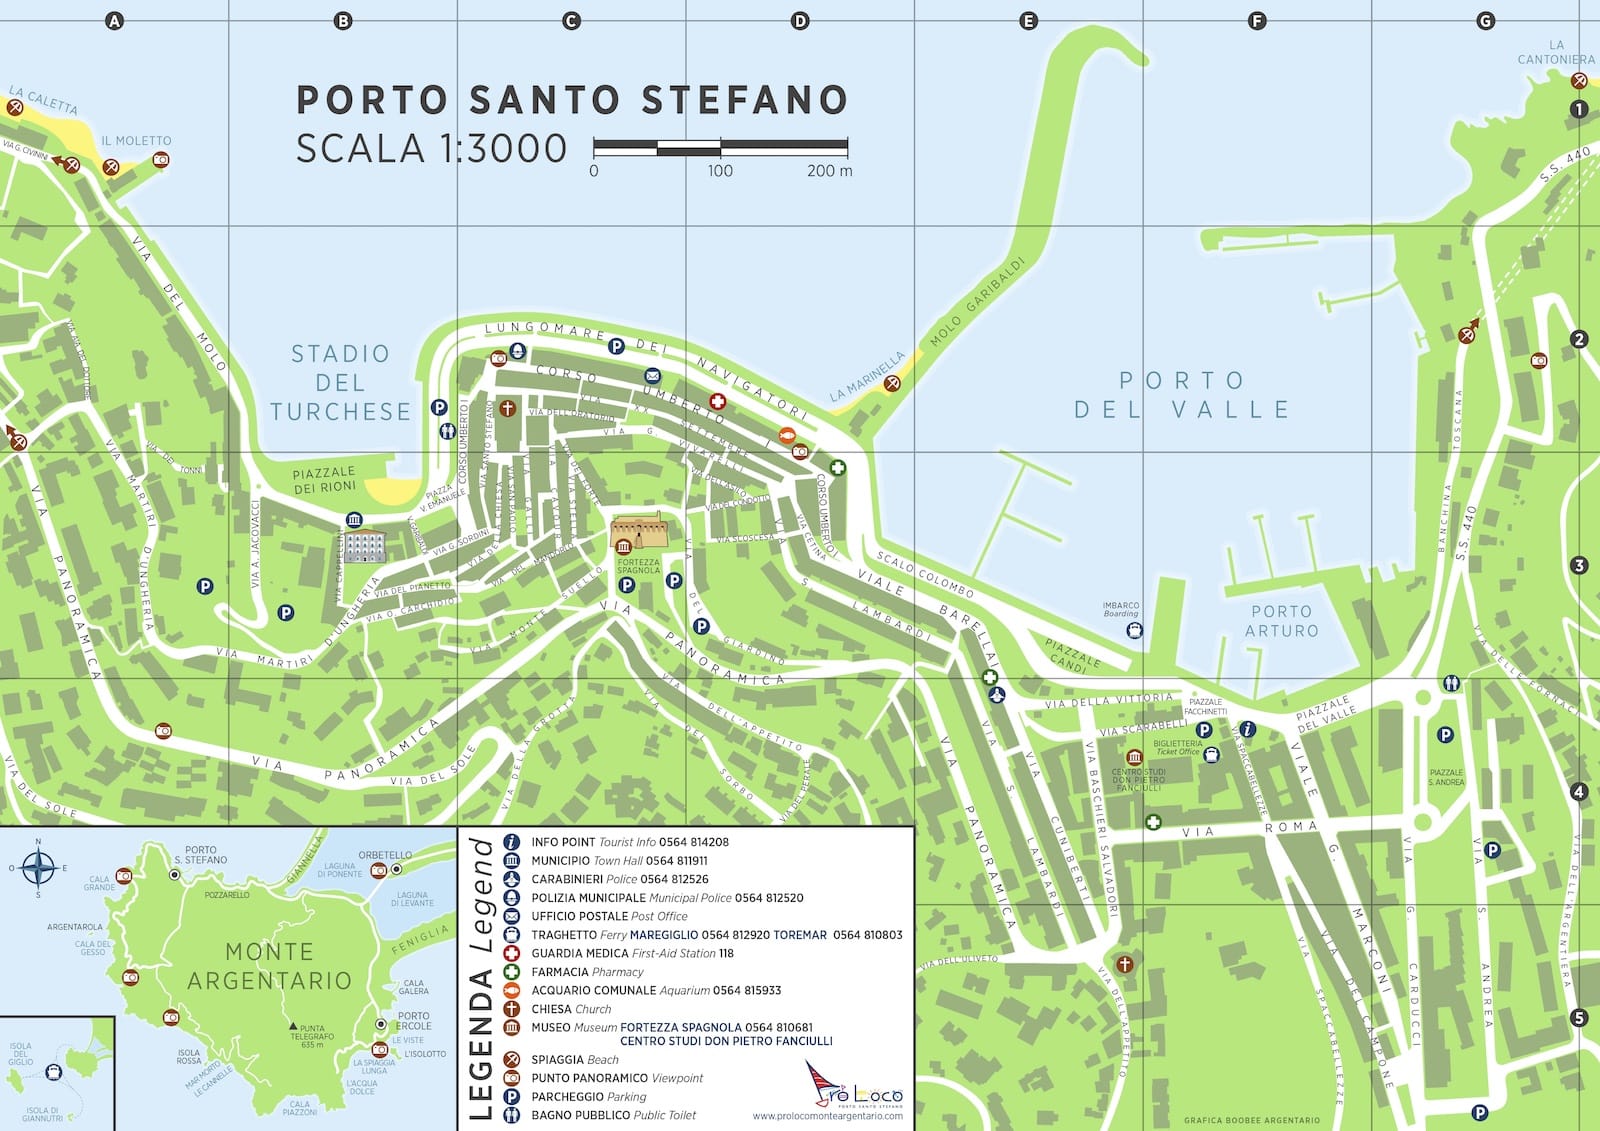 Mappa di Porto Santo Stefano e Monte Argentario